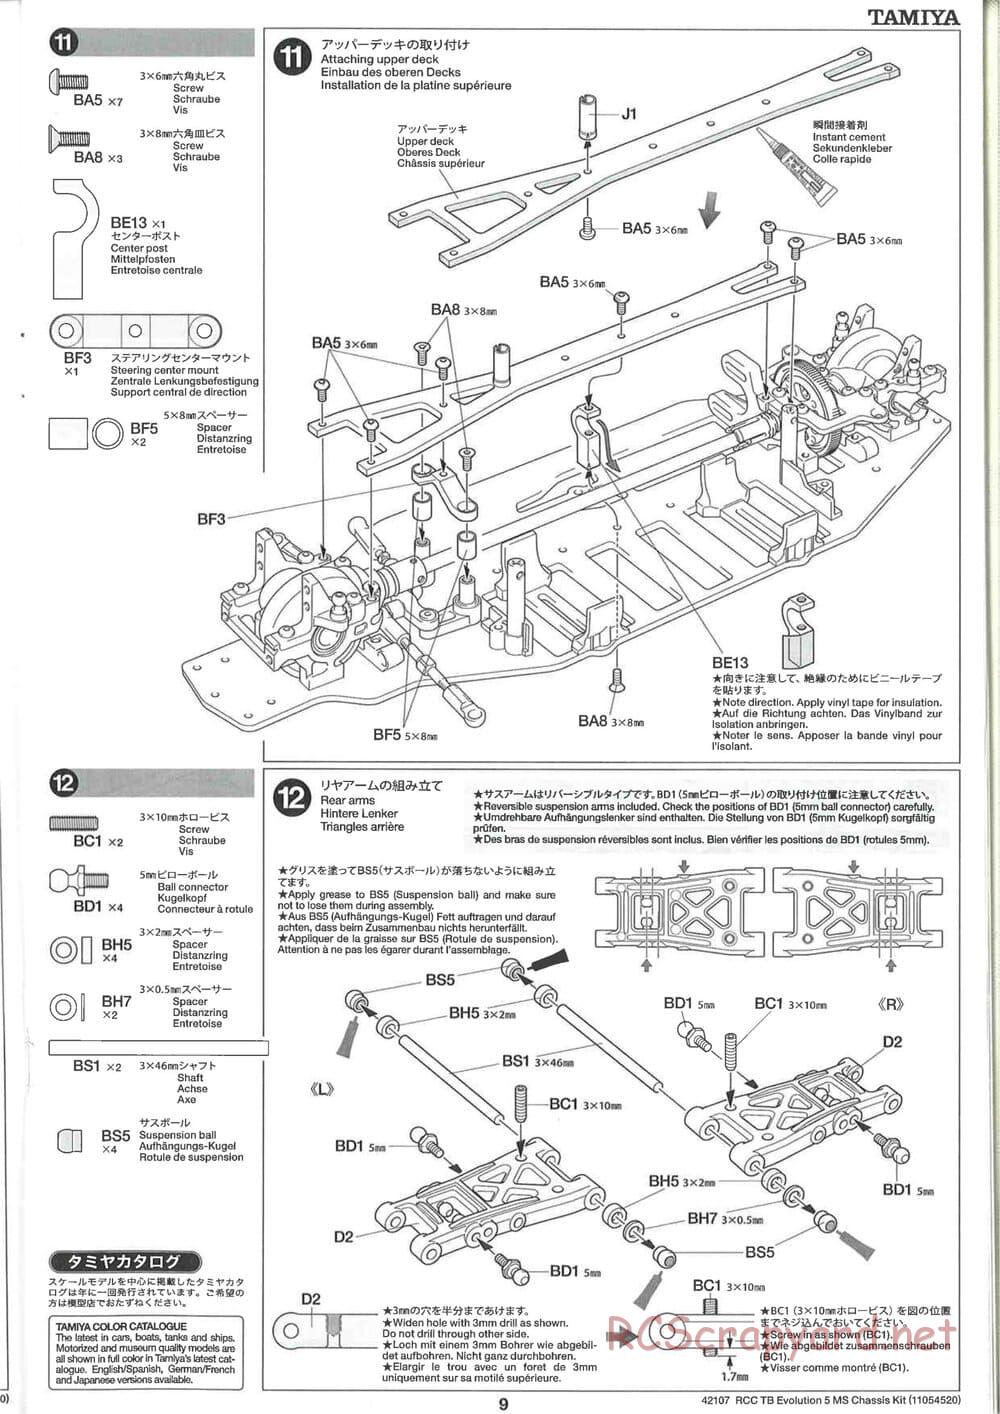 Tamiya - TB Evolution 5 MS Chassis - Manual - Page 9